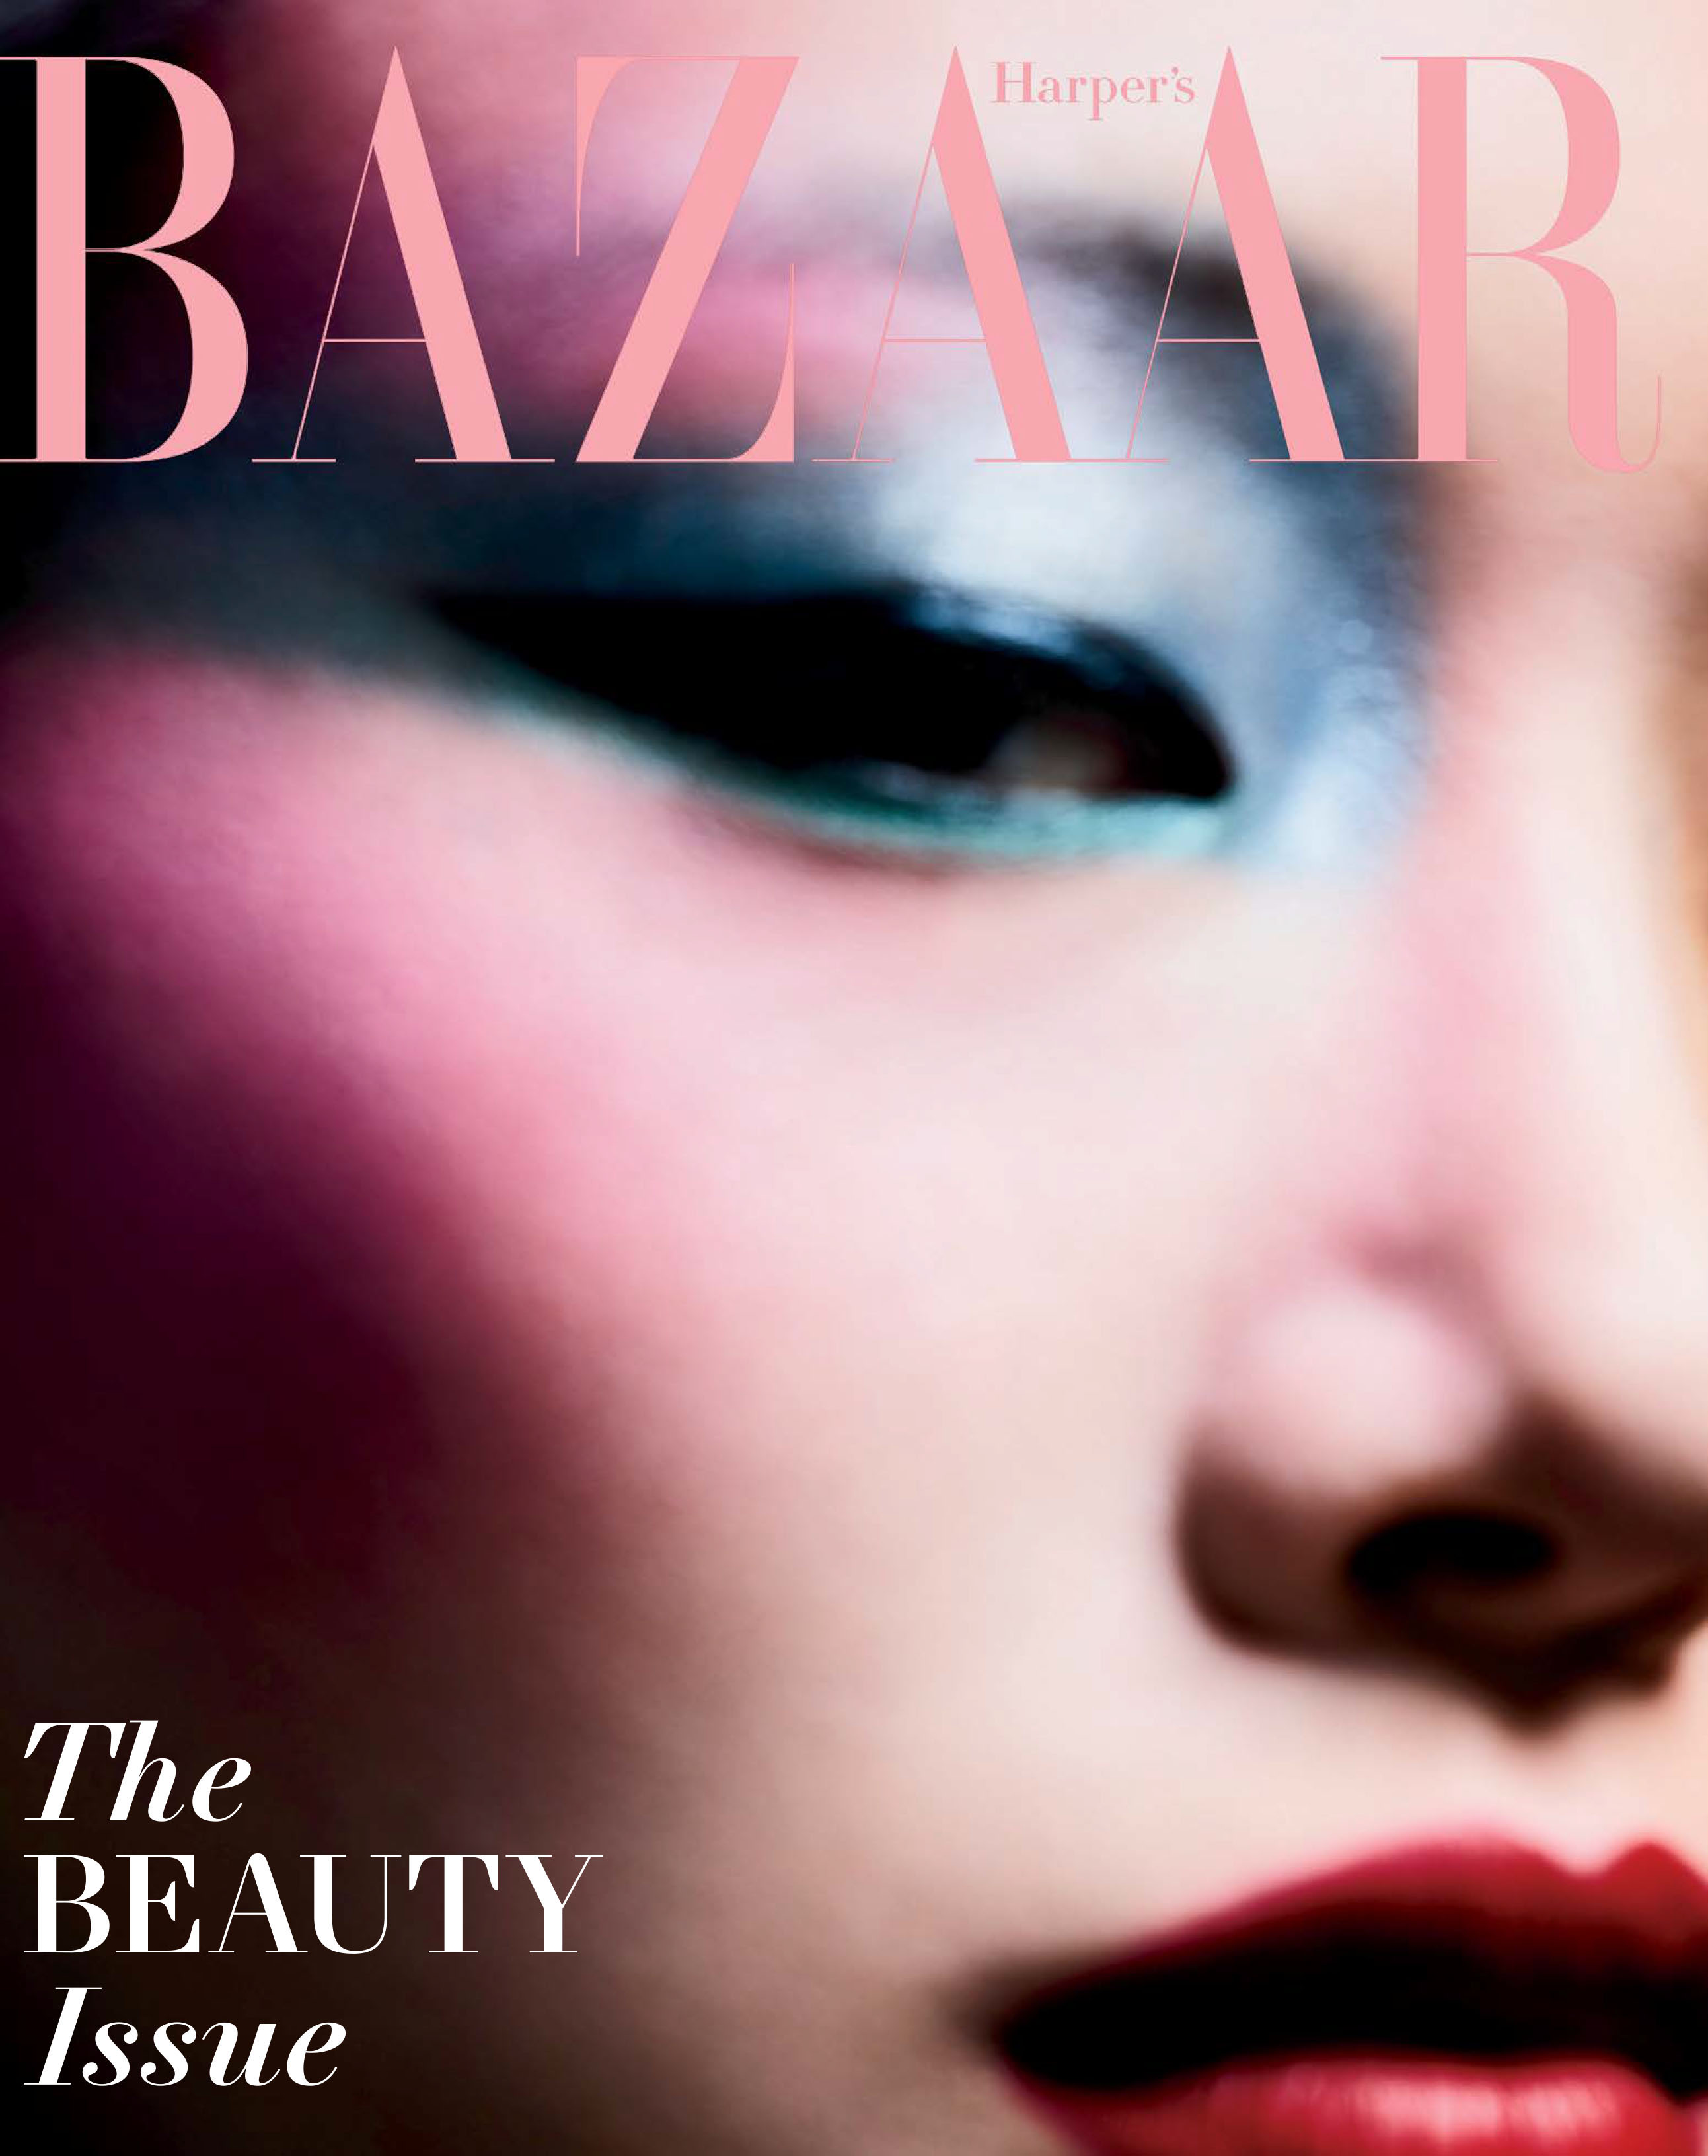 Harper's Bazaar - Photography